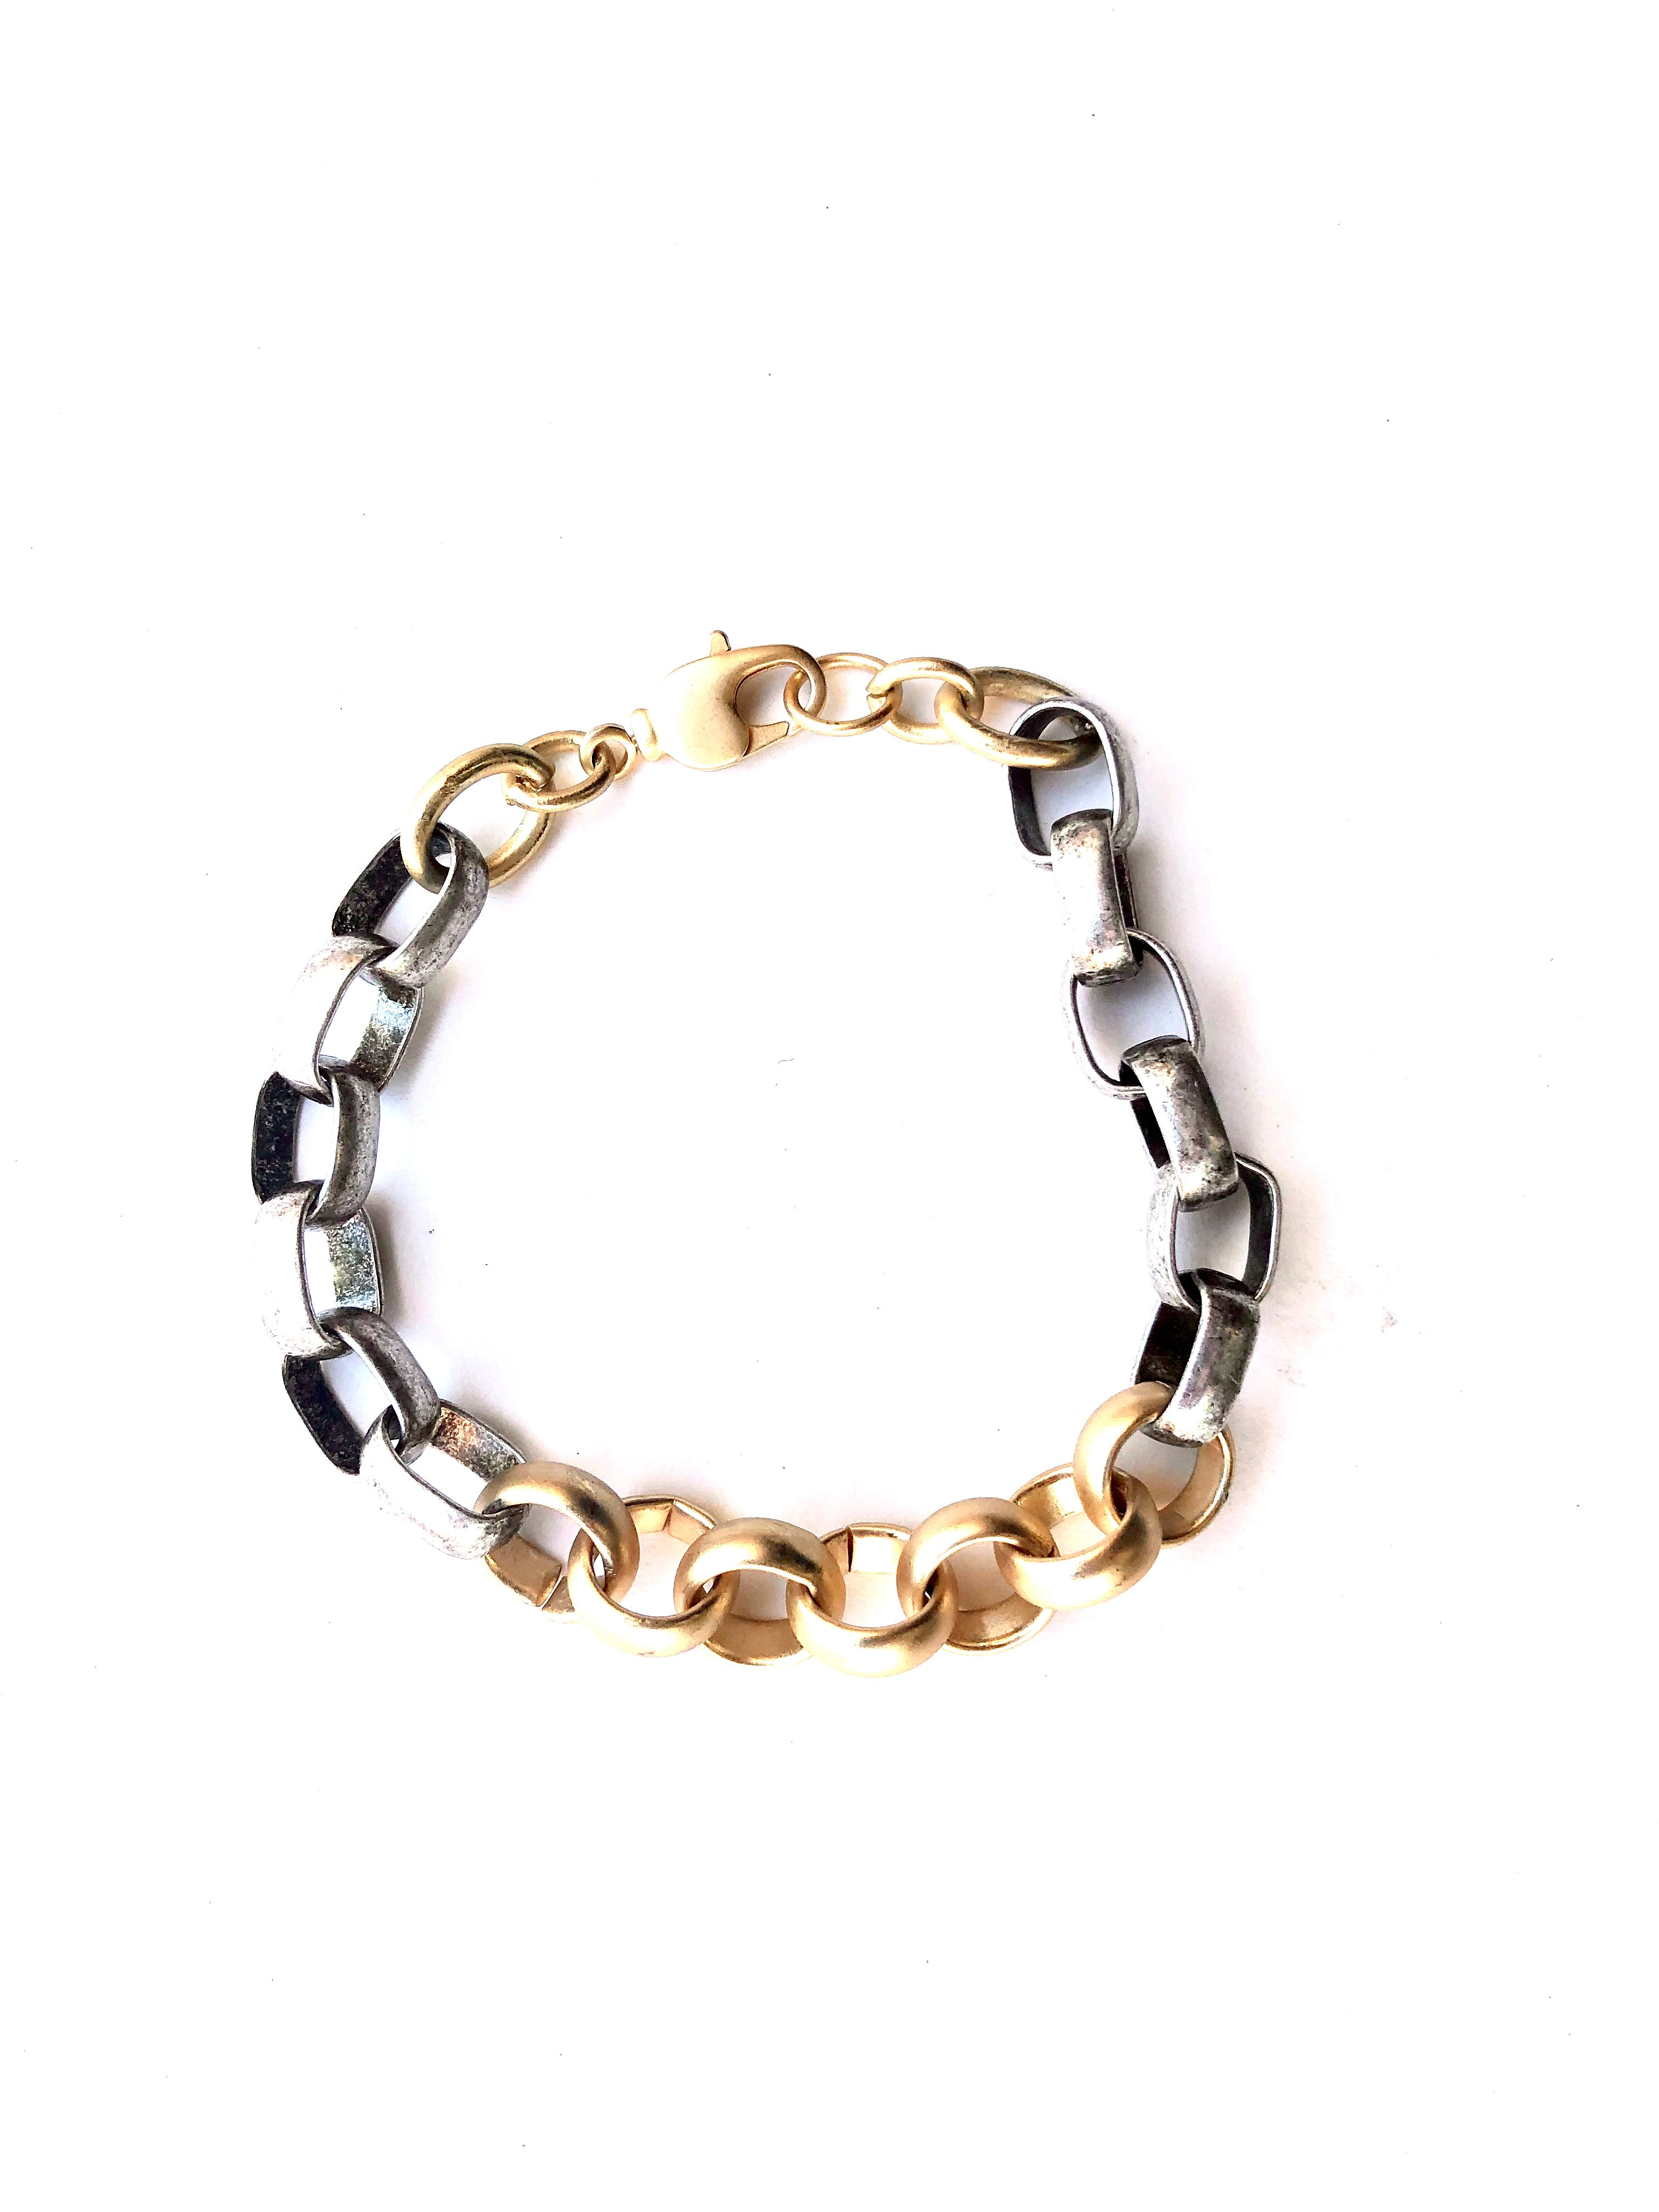 Atlas - bracelet with mixed metals